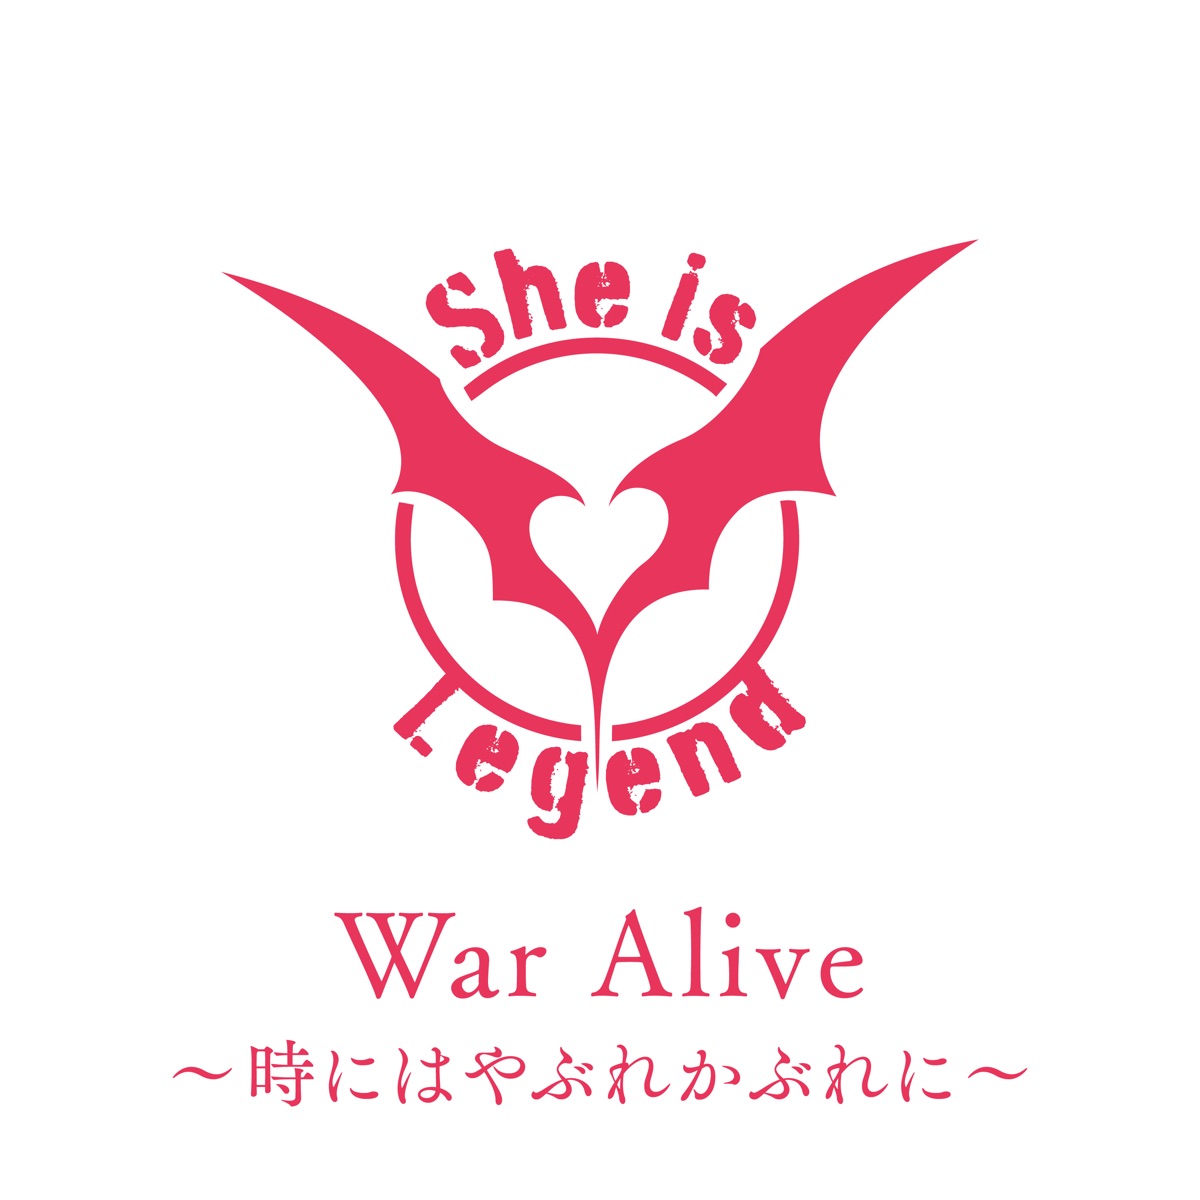 『She is Legend - War Alive〜時にはやぶれかぶれに〜』収録の『War Alive〜時にはやぶれかぶれに〜』ジャケット